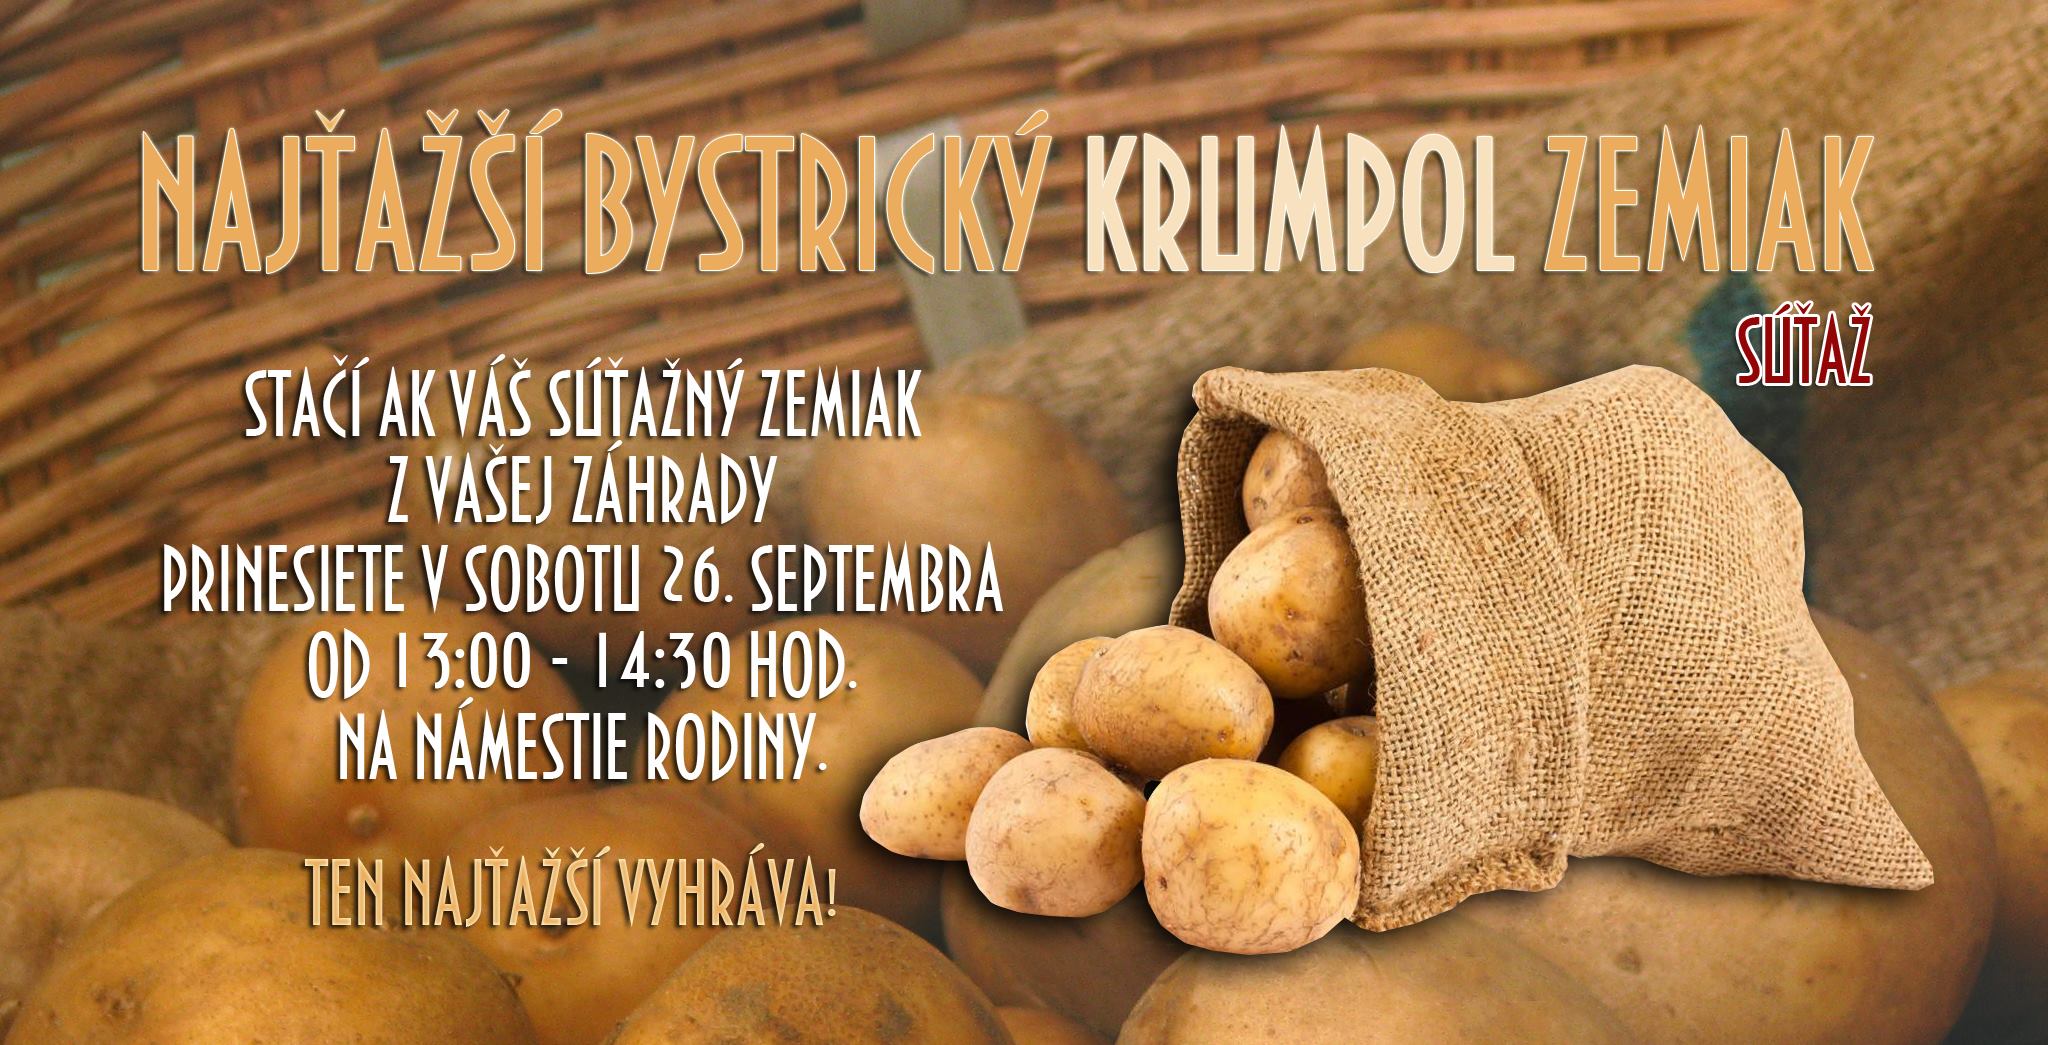 Sa o naja krumpol Zhorsk Bystrica 2015